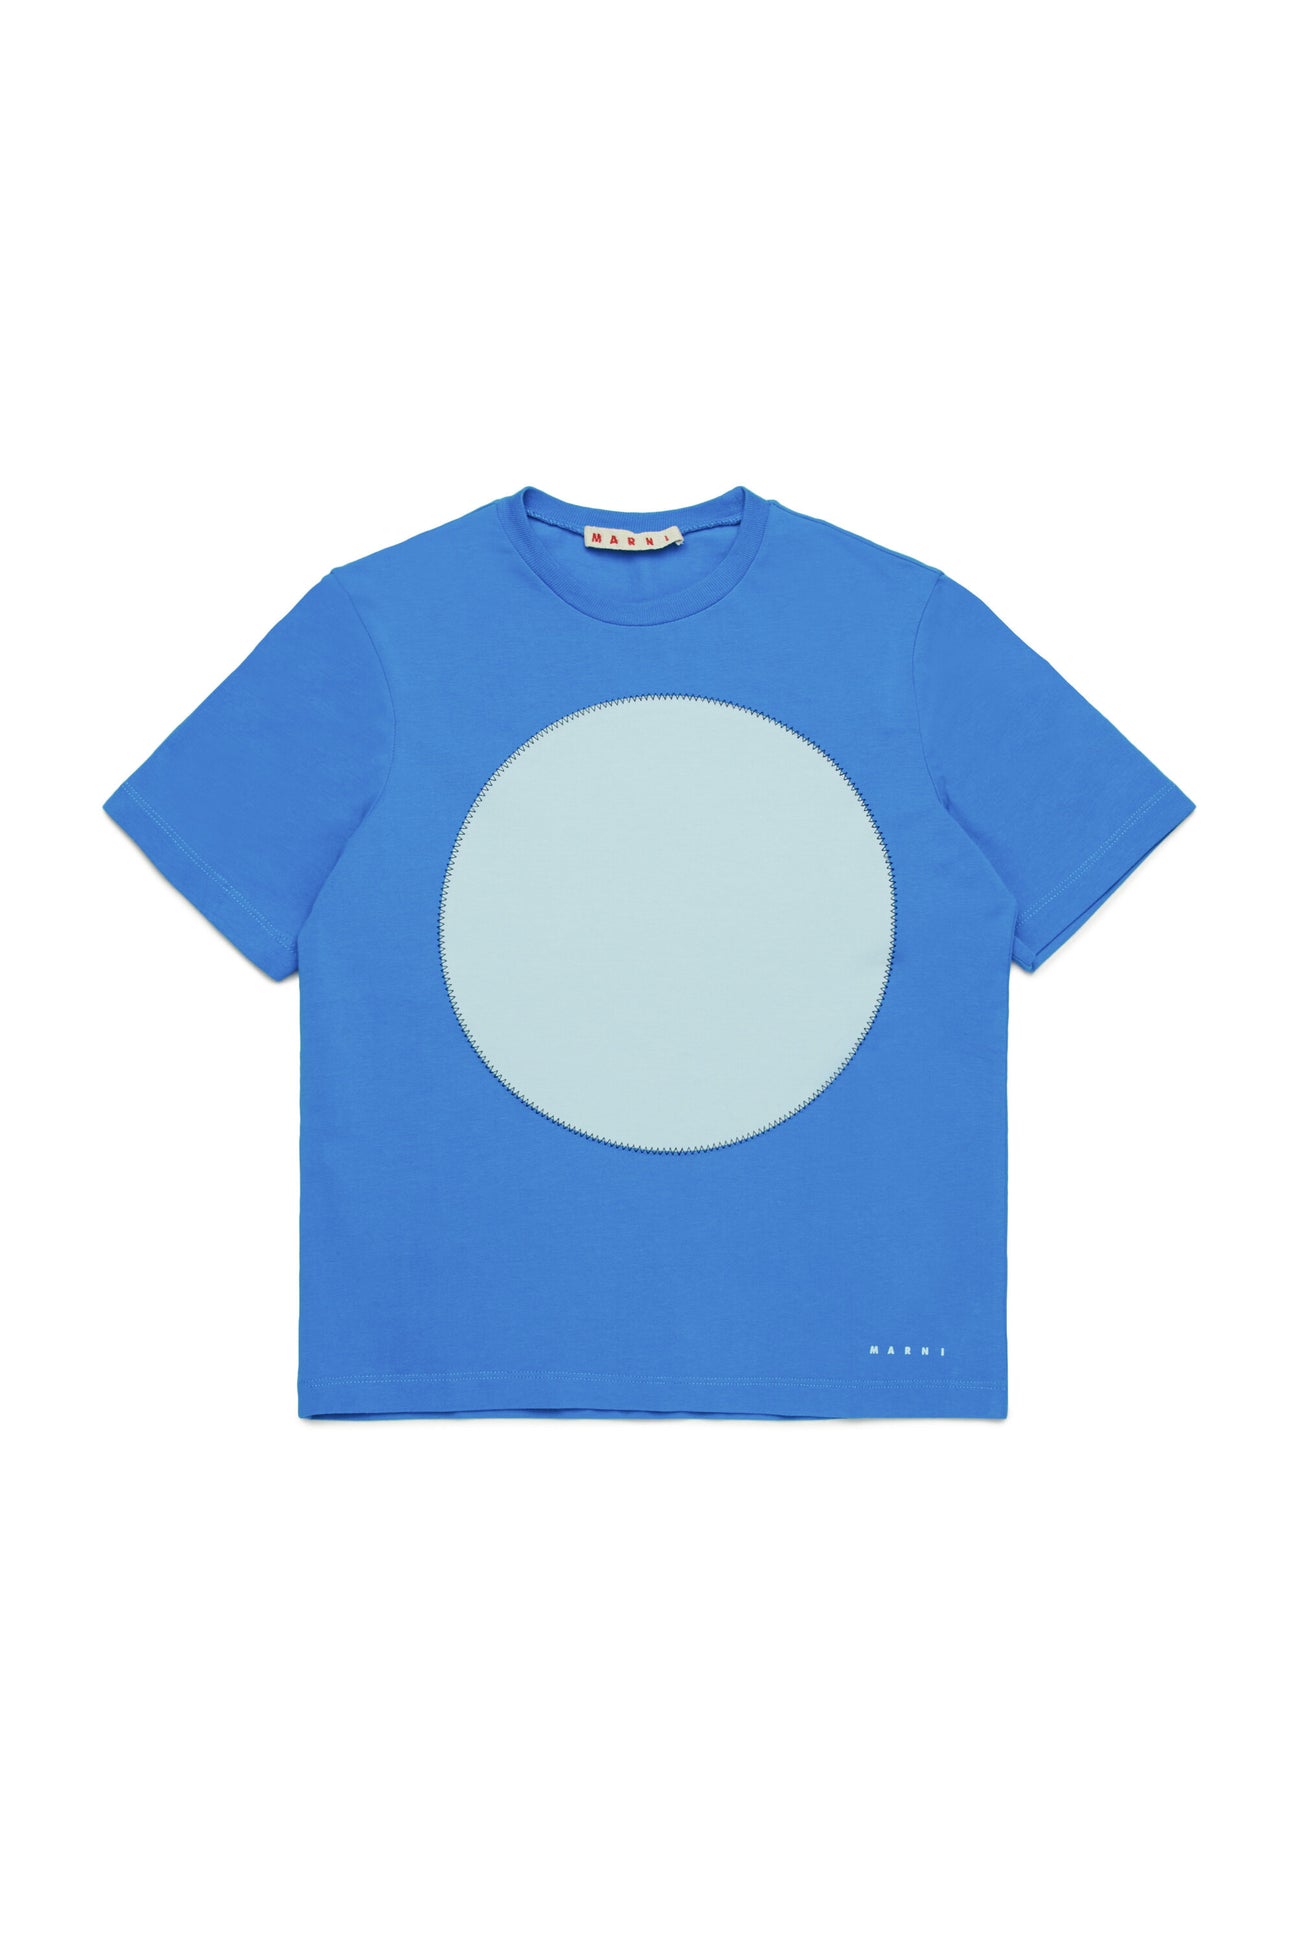 Camiseta con gráfico circular 